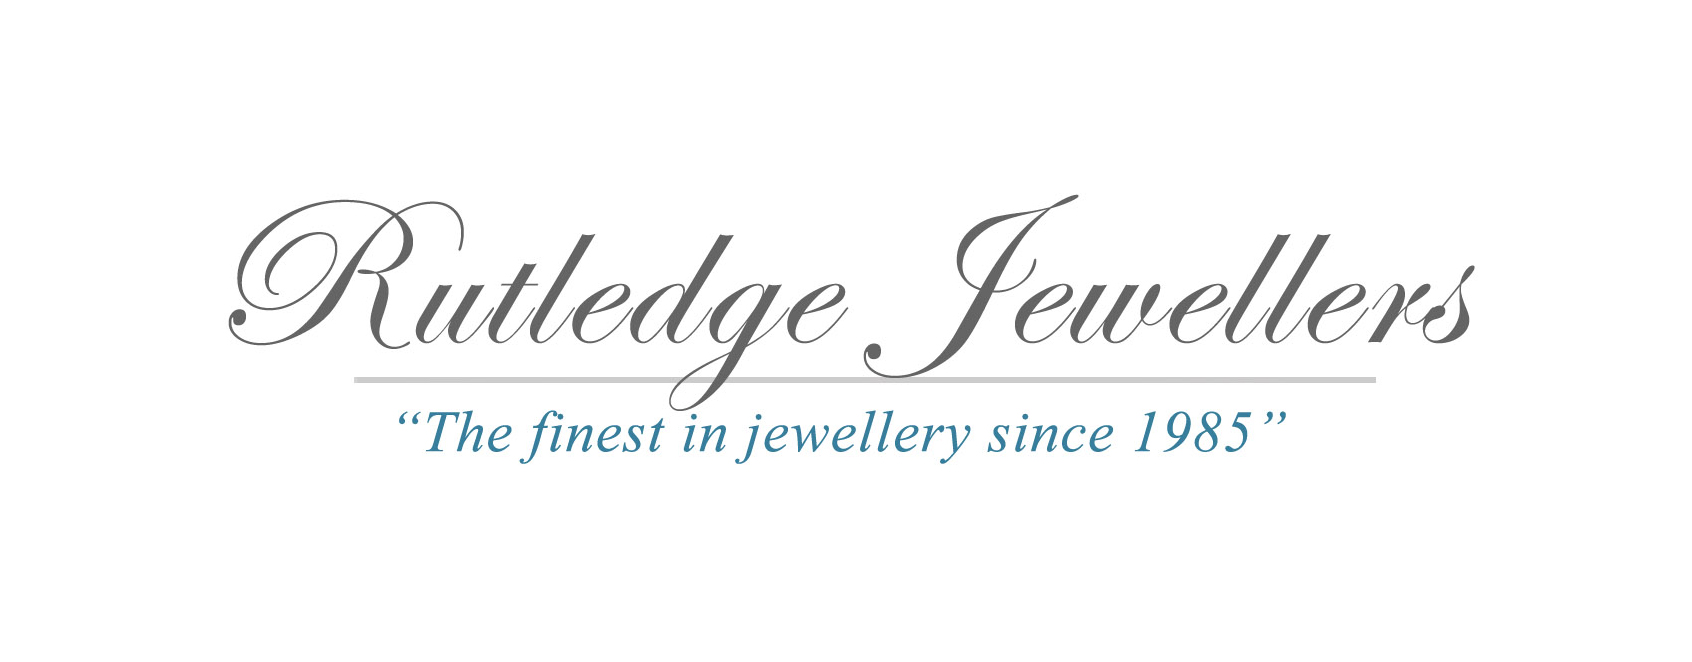 old-rutledge-jewellers-logo